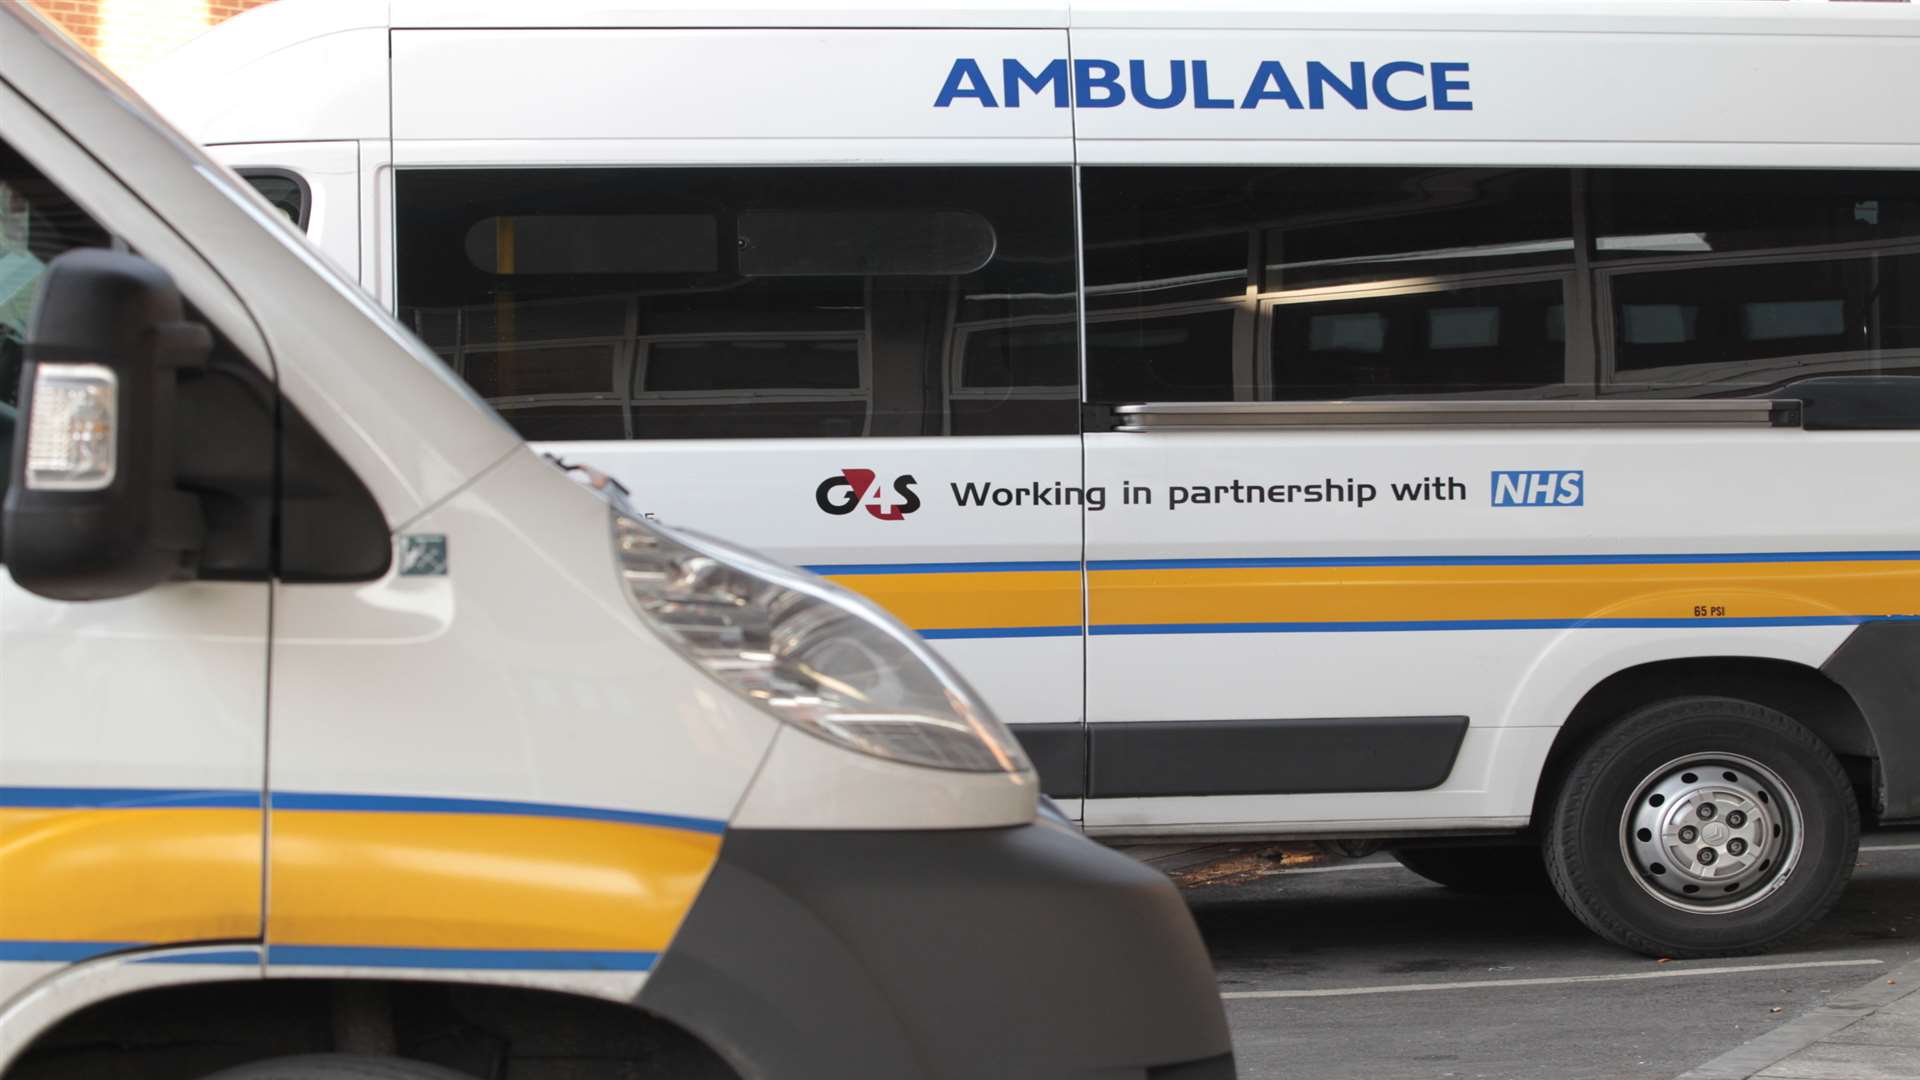 G4S patient transport service